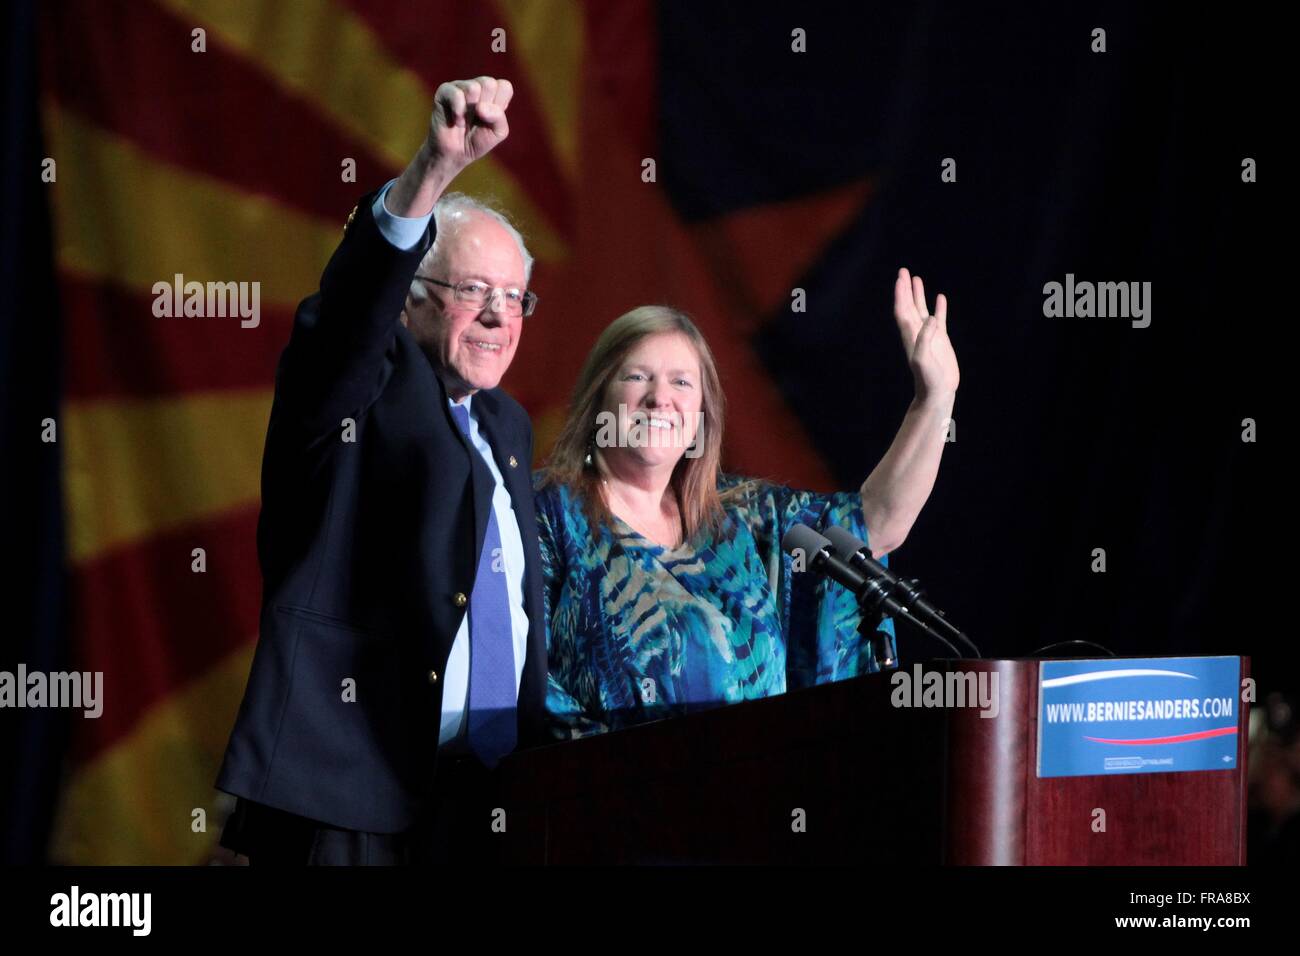 El senador y candidato presidencial demócrata Bernie Sanders y su esposa, Jane Sanders onda a simpatizantes durante un mitin de campaña, en el Centro de Convenciones de Phoenix, 15 de marzo de 2016 en Phoenix, Arizona. Foto de stock